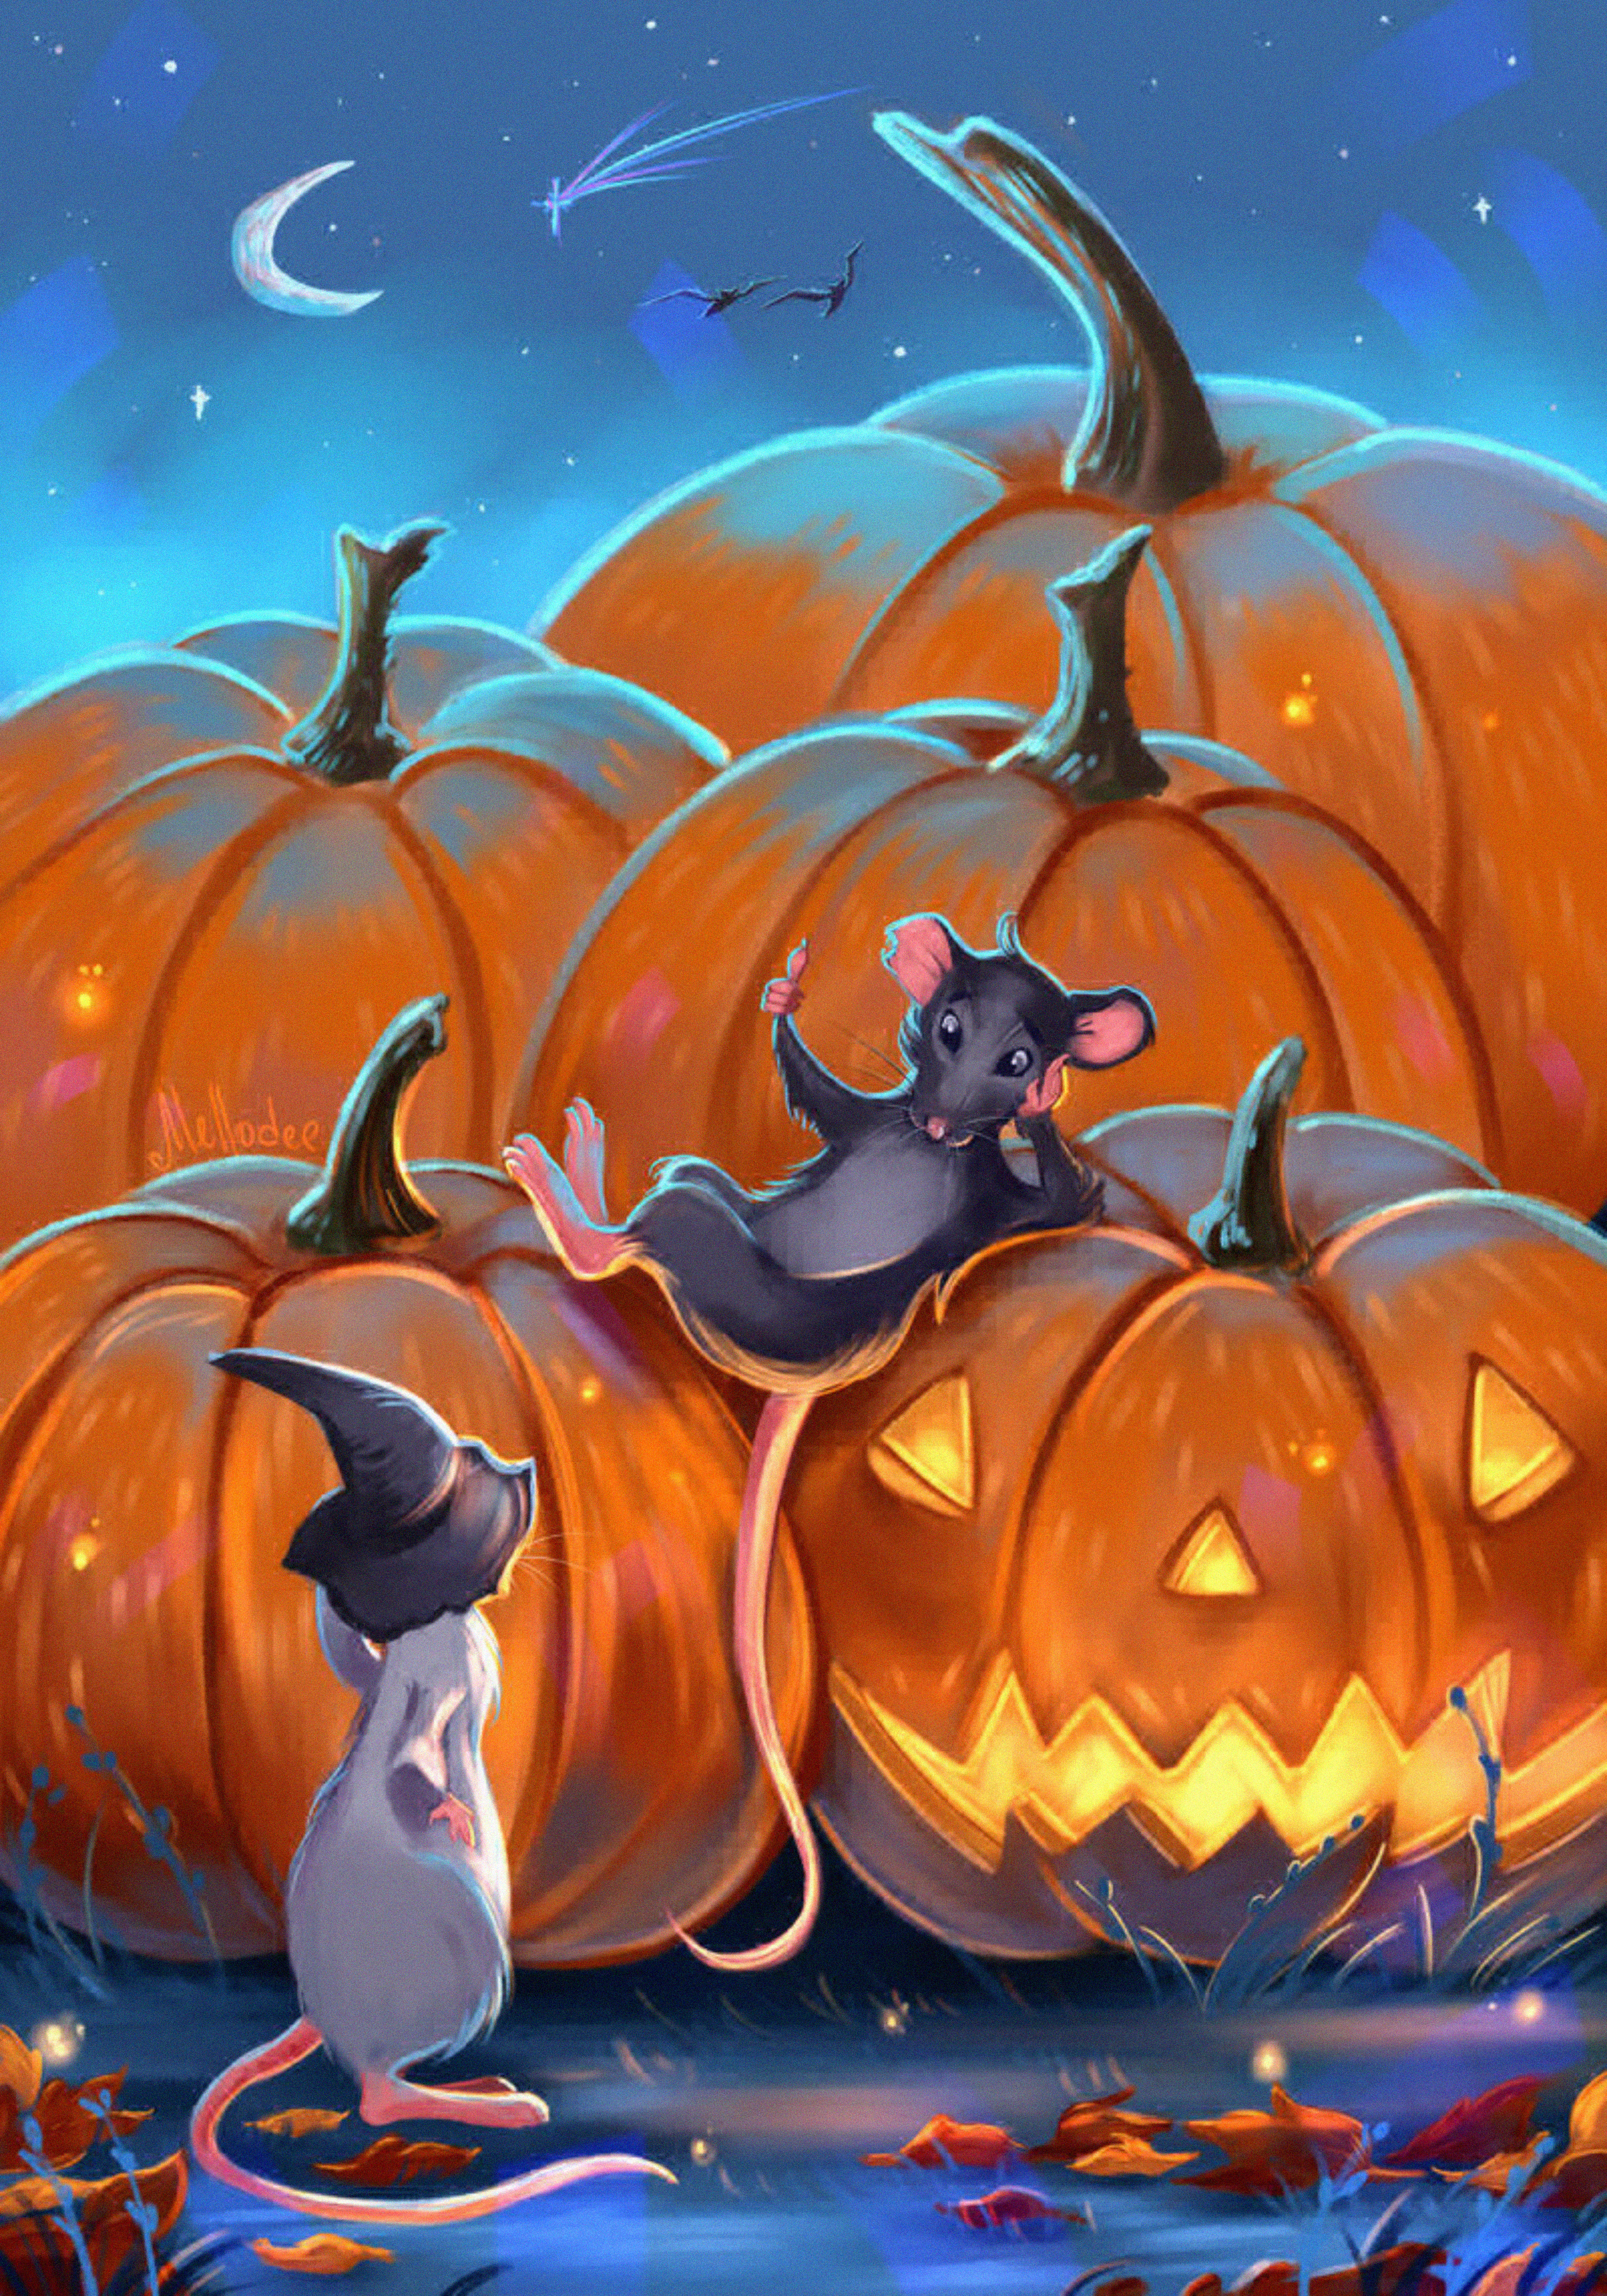 Mice pumpkin, art, night, halloween Free Stock Photos